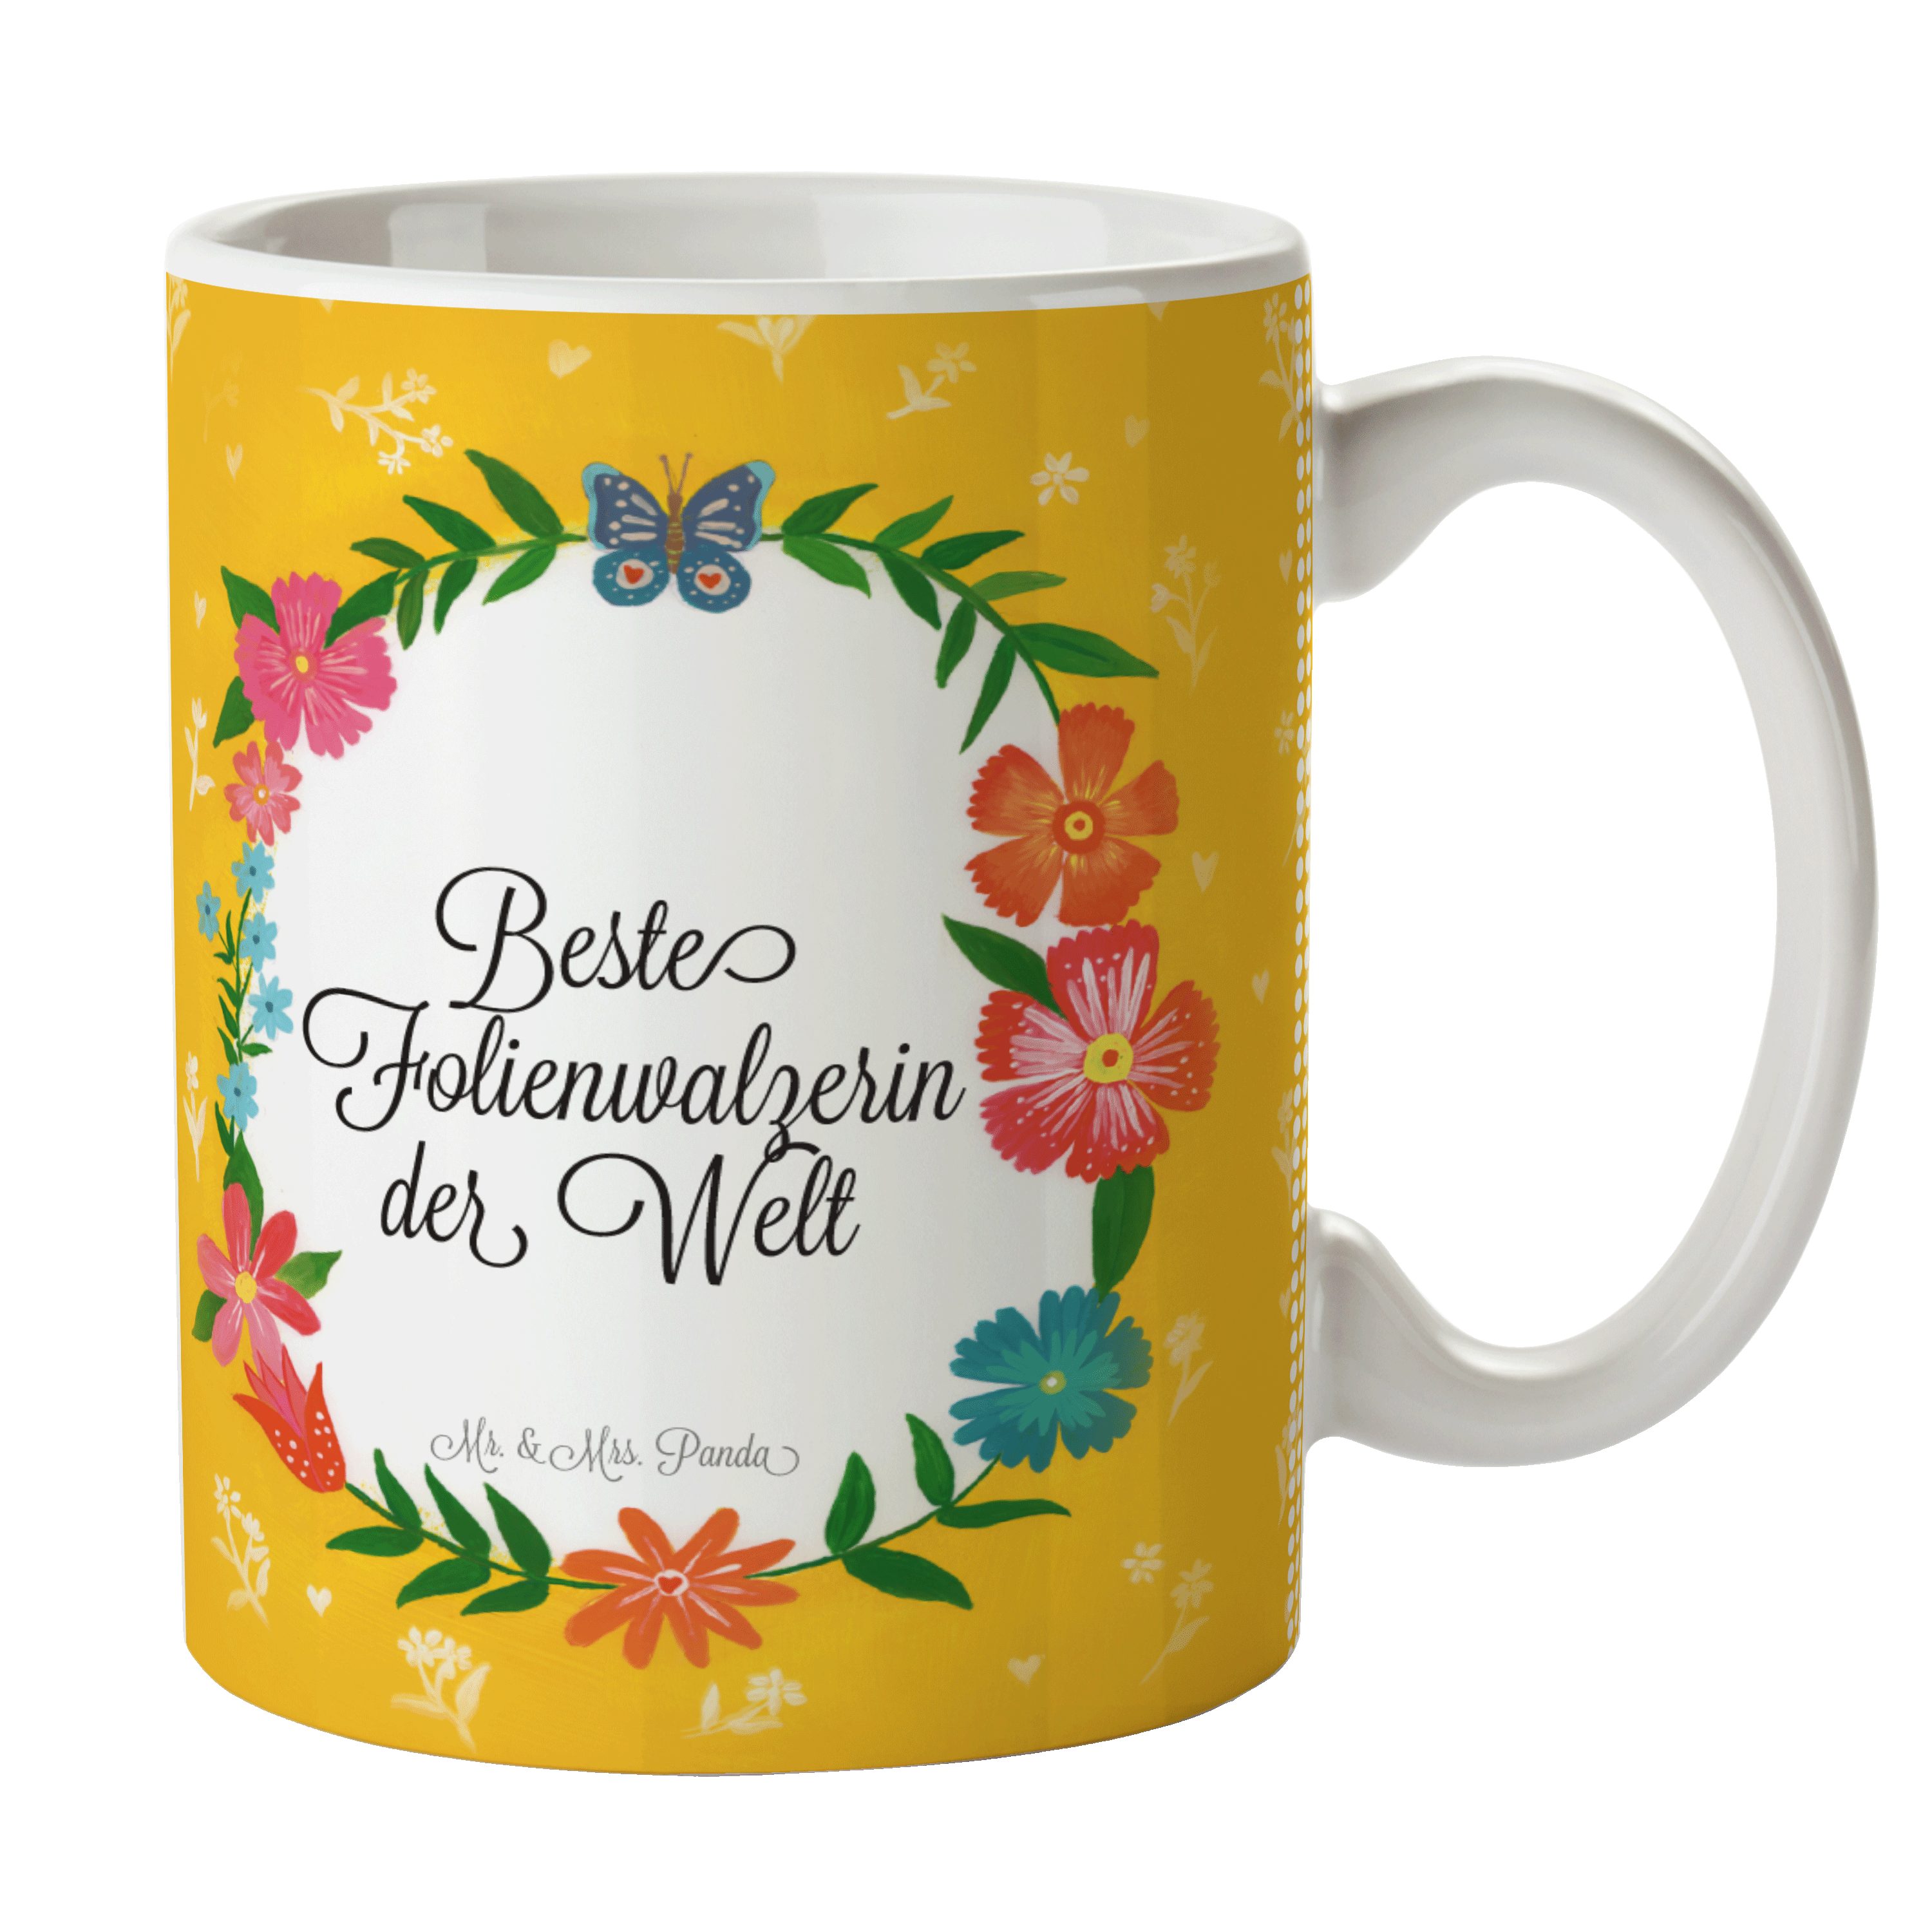 Sprüche, Mrs. Keramik - Geschenk, Tasse Folienwalzerin Tasse, & Mr. Panda Schenken, Kaffeebech, Tasse